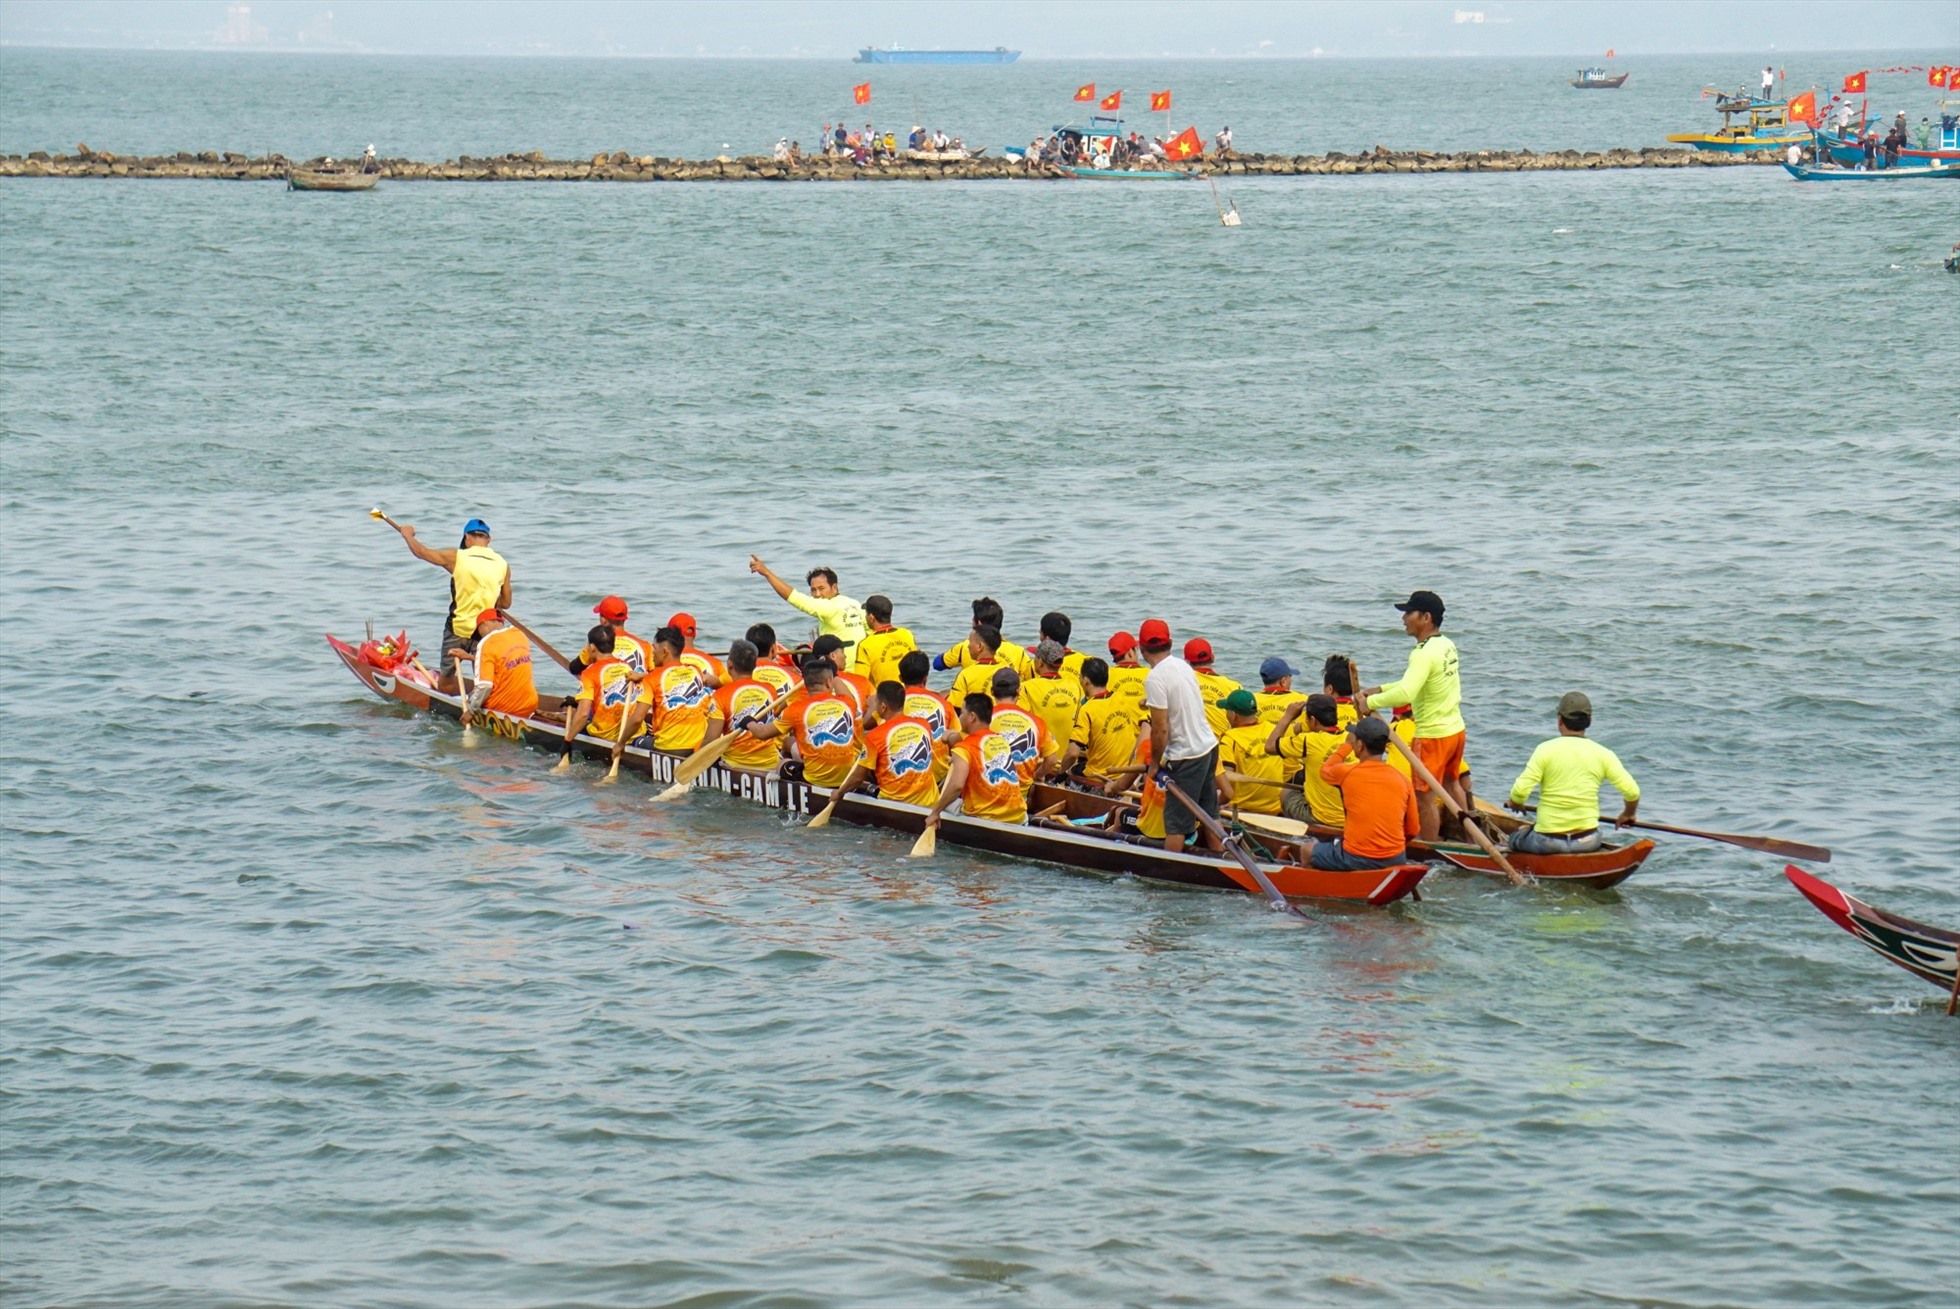 Các đội đua tham gia giải phải tuân thủ các yêu cầu như chiều dài thuyền không quá 15,50m; số vận động viên không quá 17 người/ thuyền.